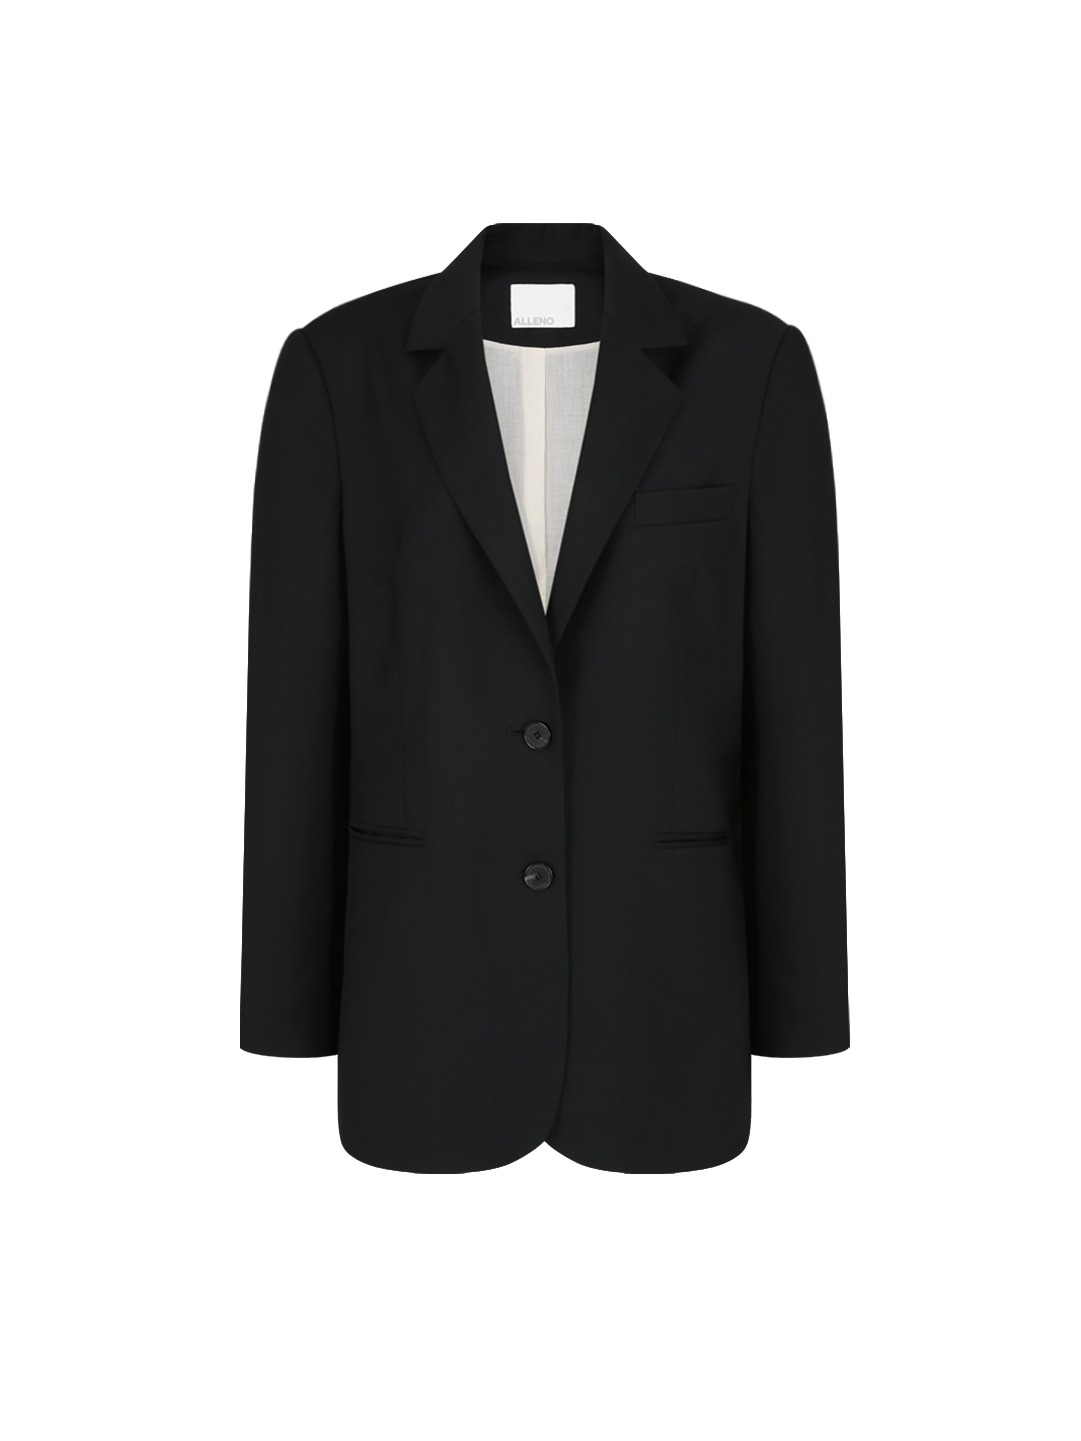 Row fit virgin wool jacket (Black)